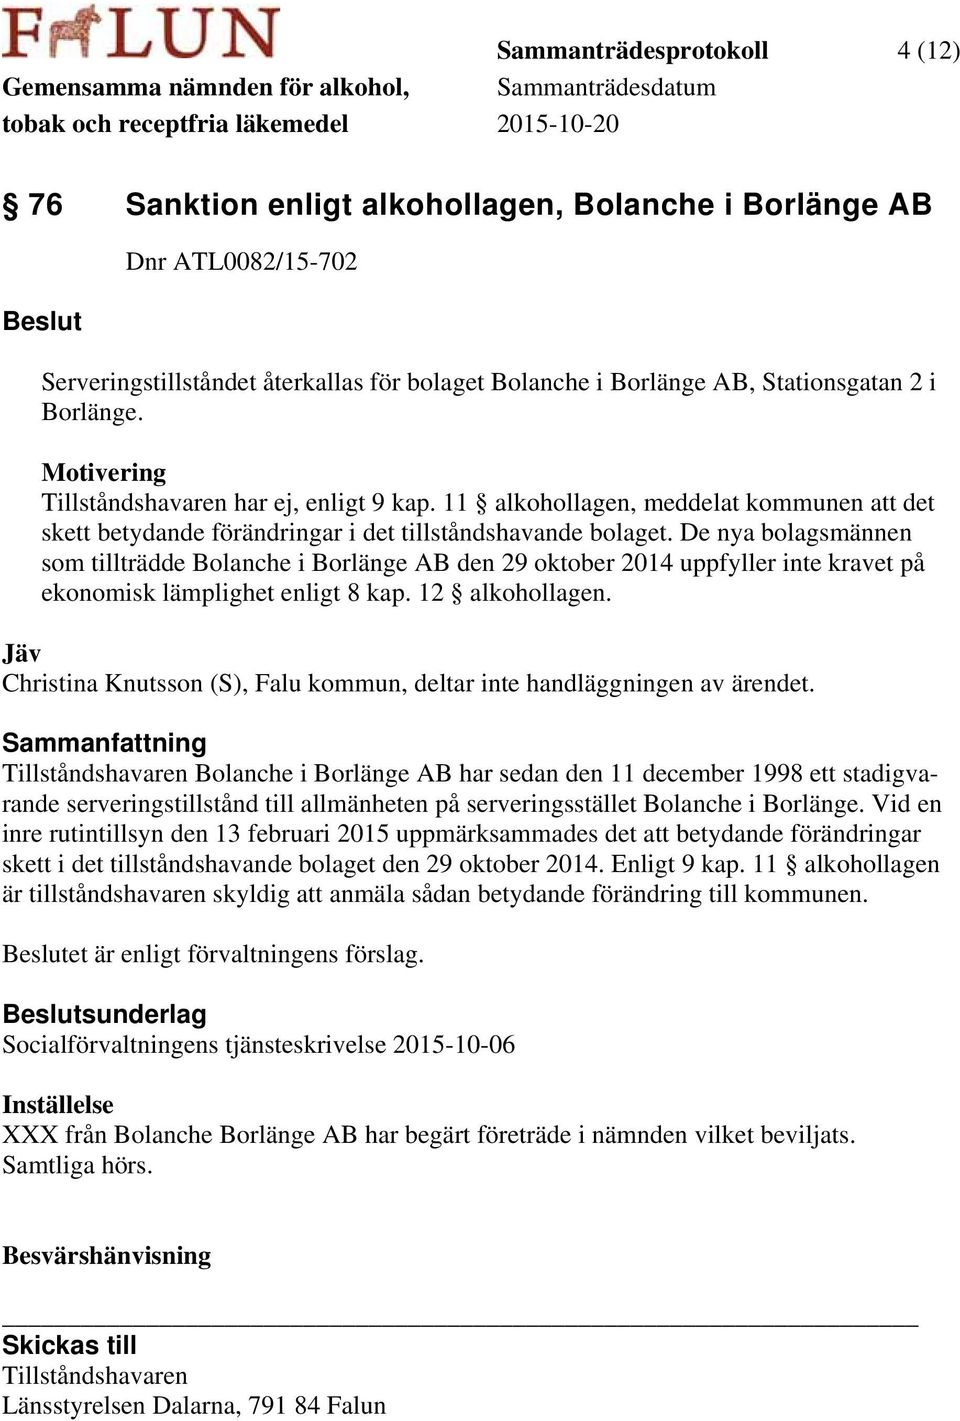 De nya bolagsmännen som tillträdde Bolanche i Borlänge AB den 29 oktober 2014 uppfyller inte kravet på ekonomisk lämplighet enligt 8 kap. 12 alkohollagen.